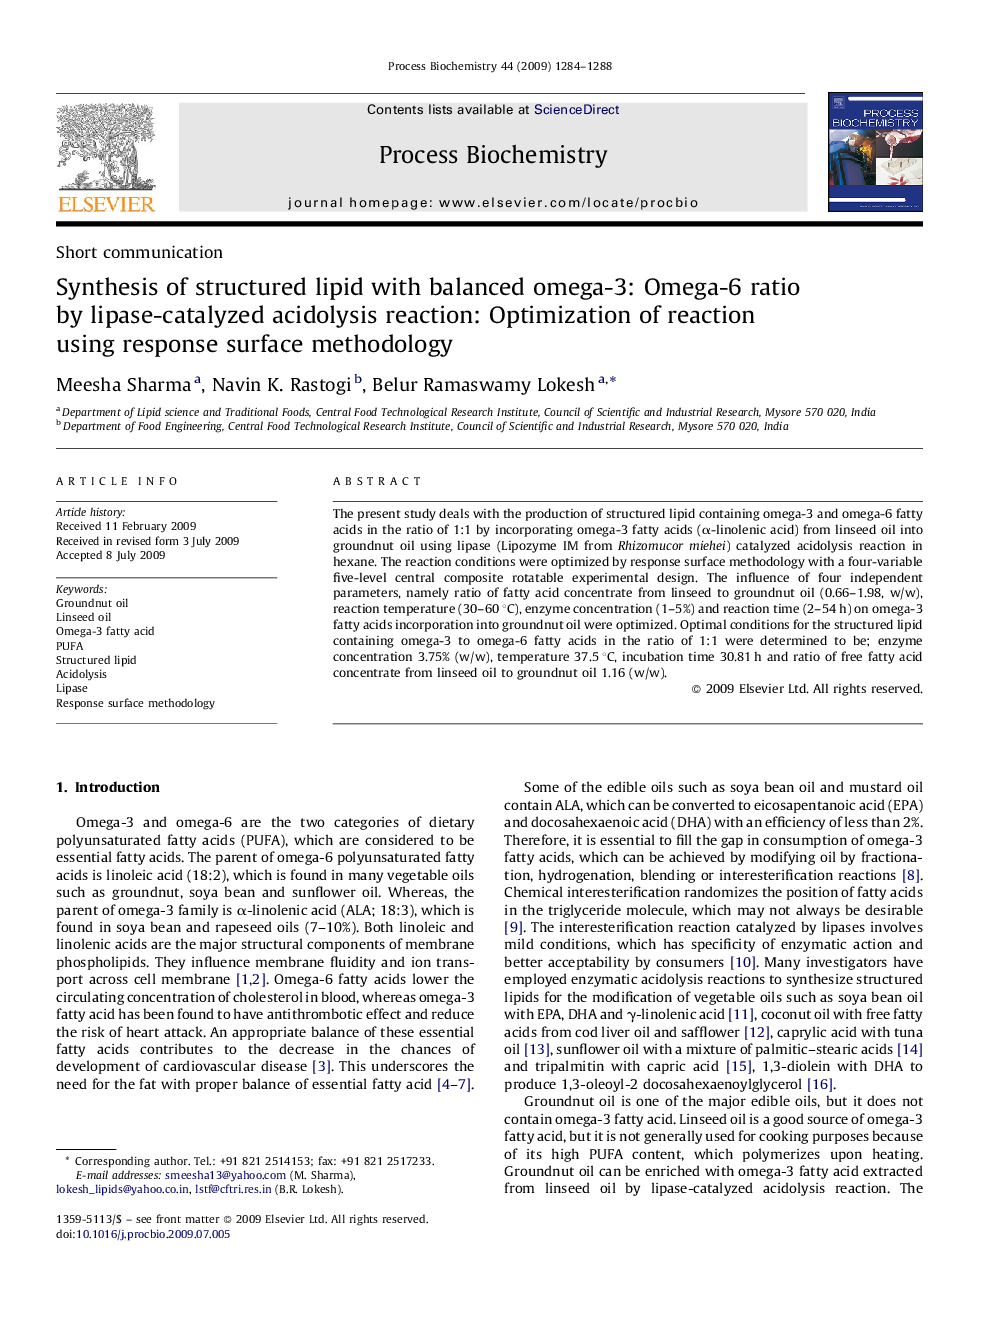 Synthesis of structured lipid with balanced omega-3: Omega-6 ratio by lipase-catalyzed acidolysis reaction: Optimization of reaction using response surface methodology